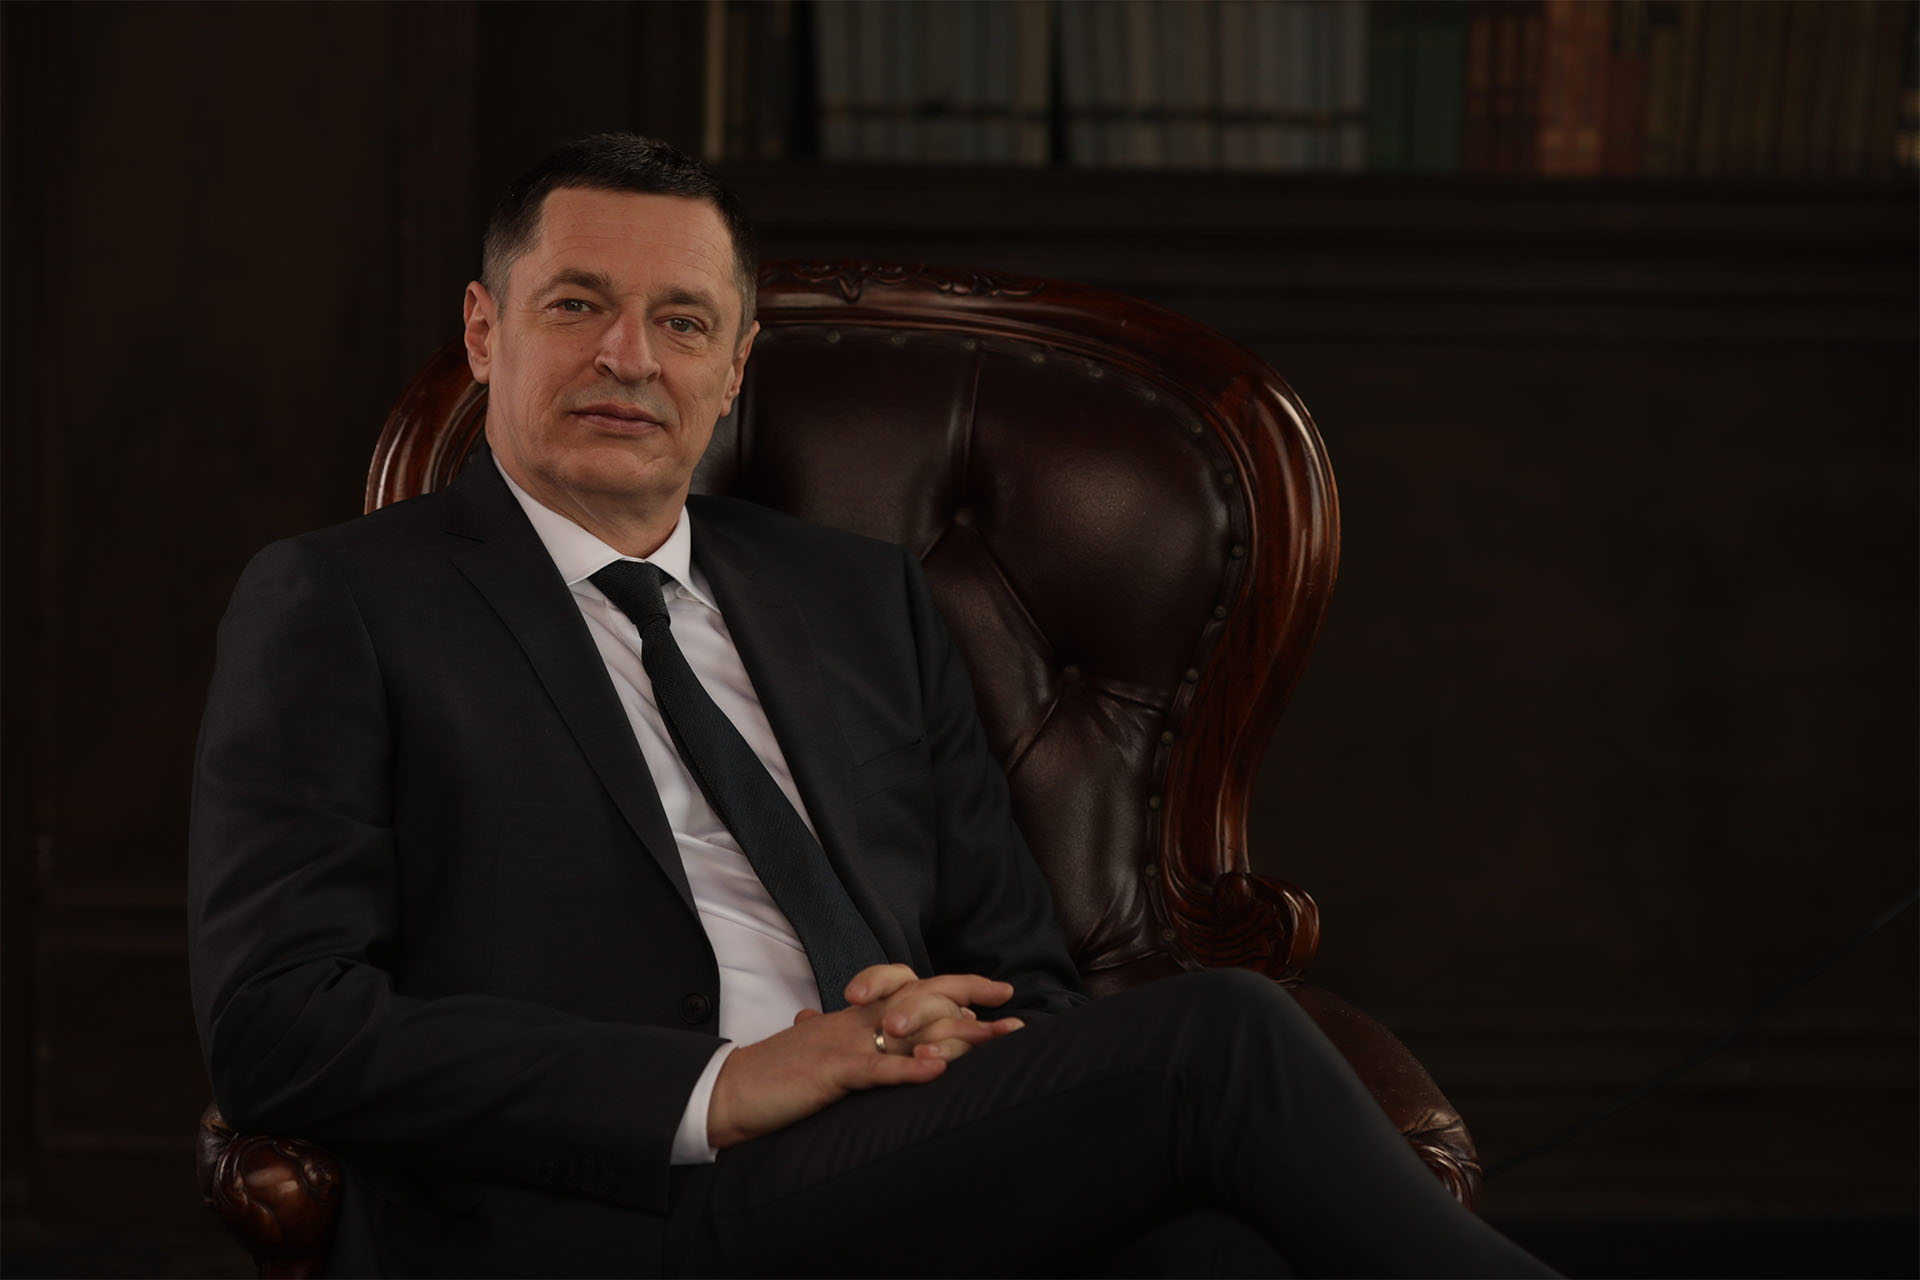 Котович Борис - предприниматель, бизнес-консультант